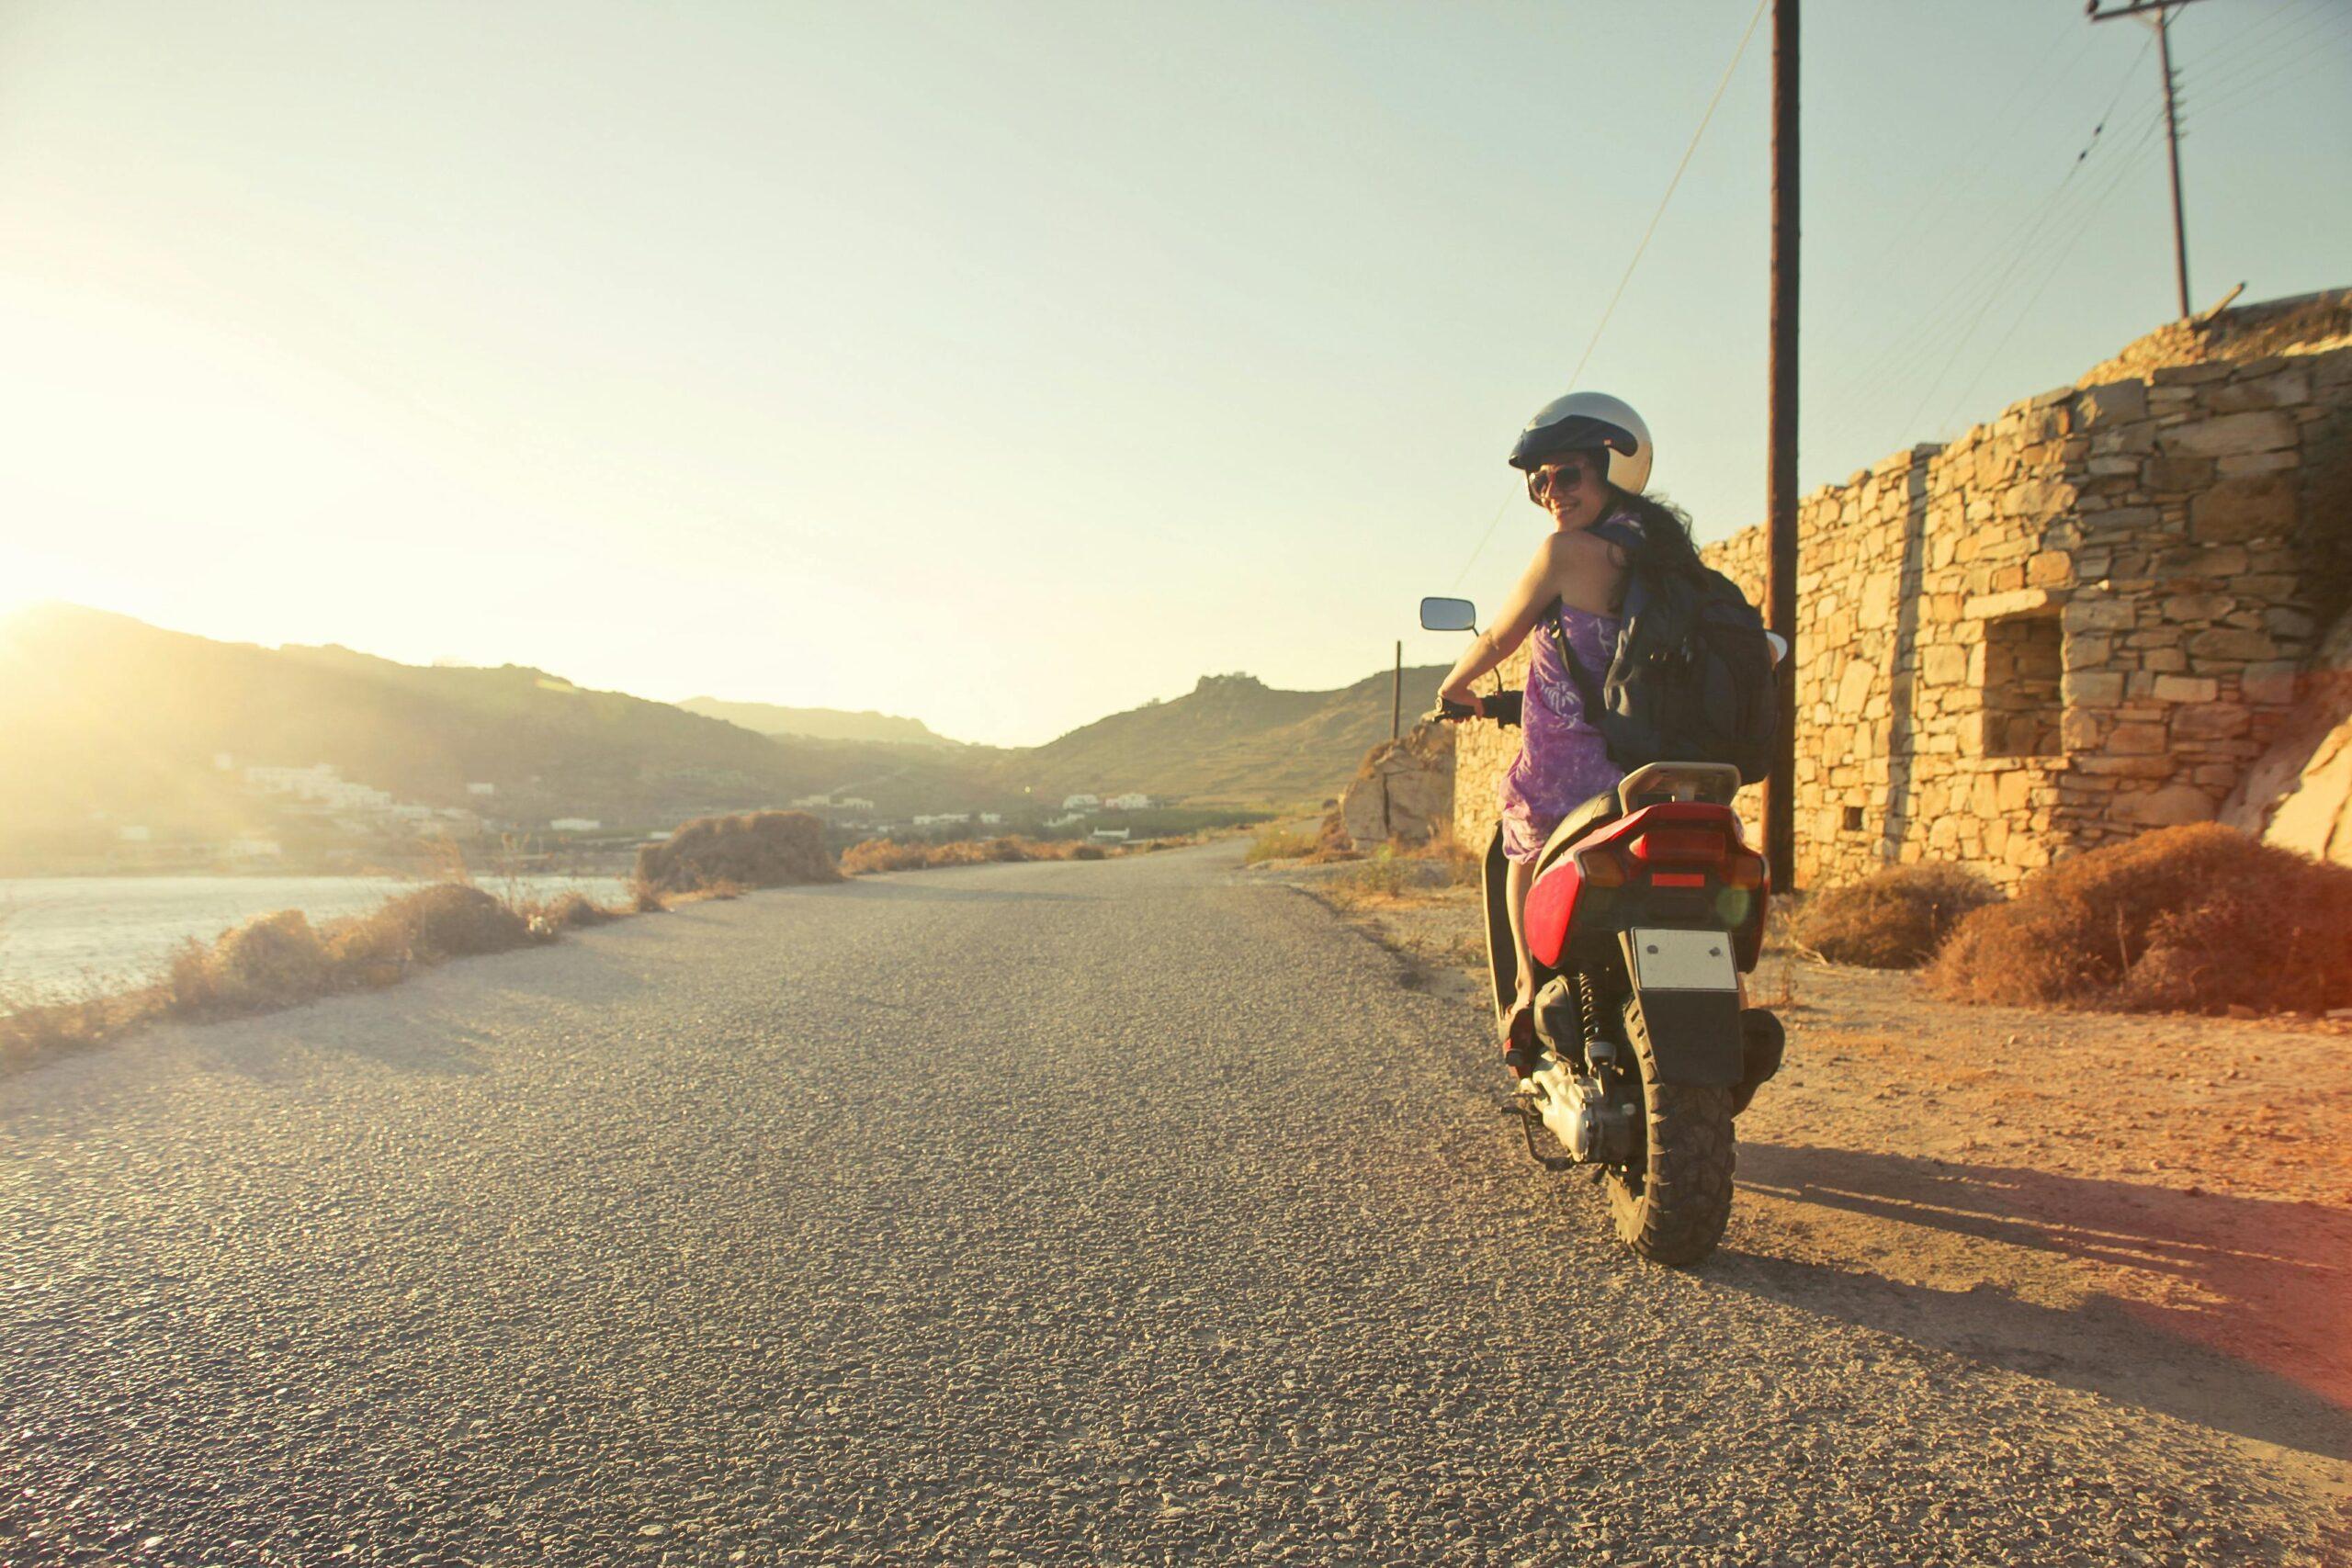 Eine Fahrerin genießt eine Ausfahrt im Sonnenuntergang auf ihrem 50ccm Motorrad auf einer ruhigen Landstraße mit Blick auf die hügelige Landschaft